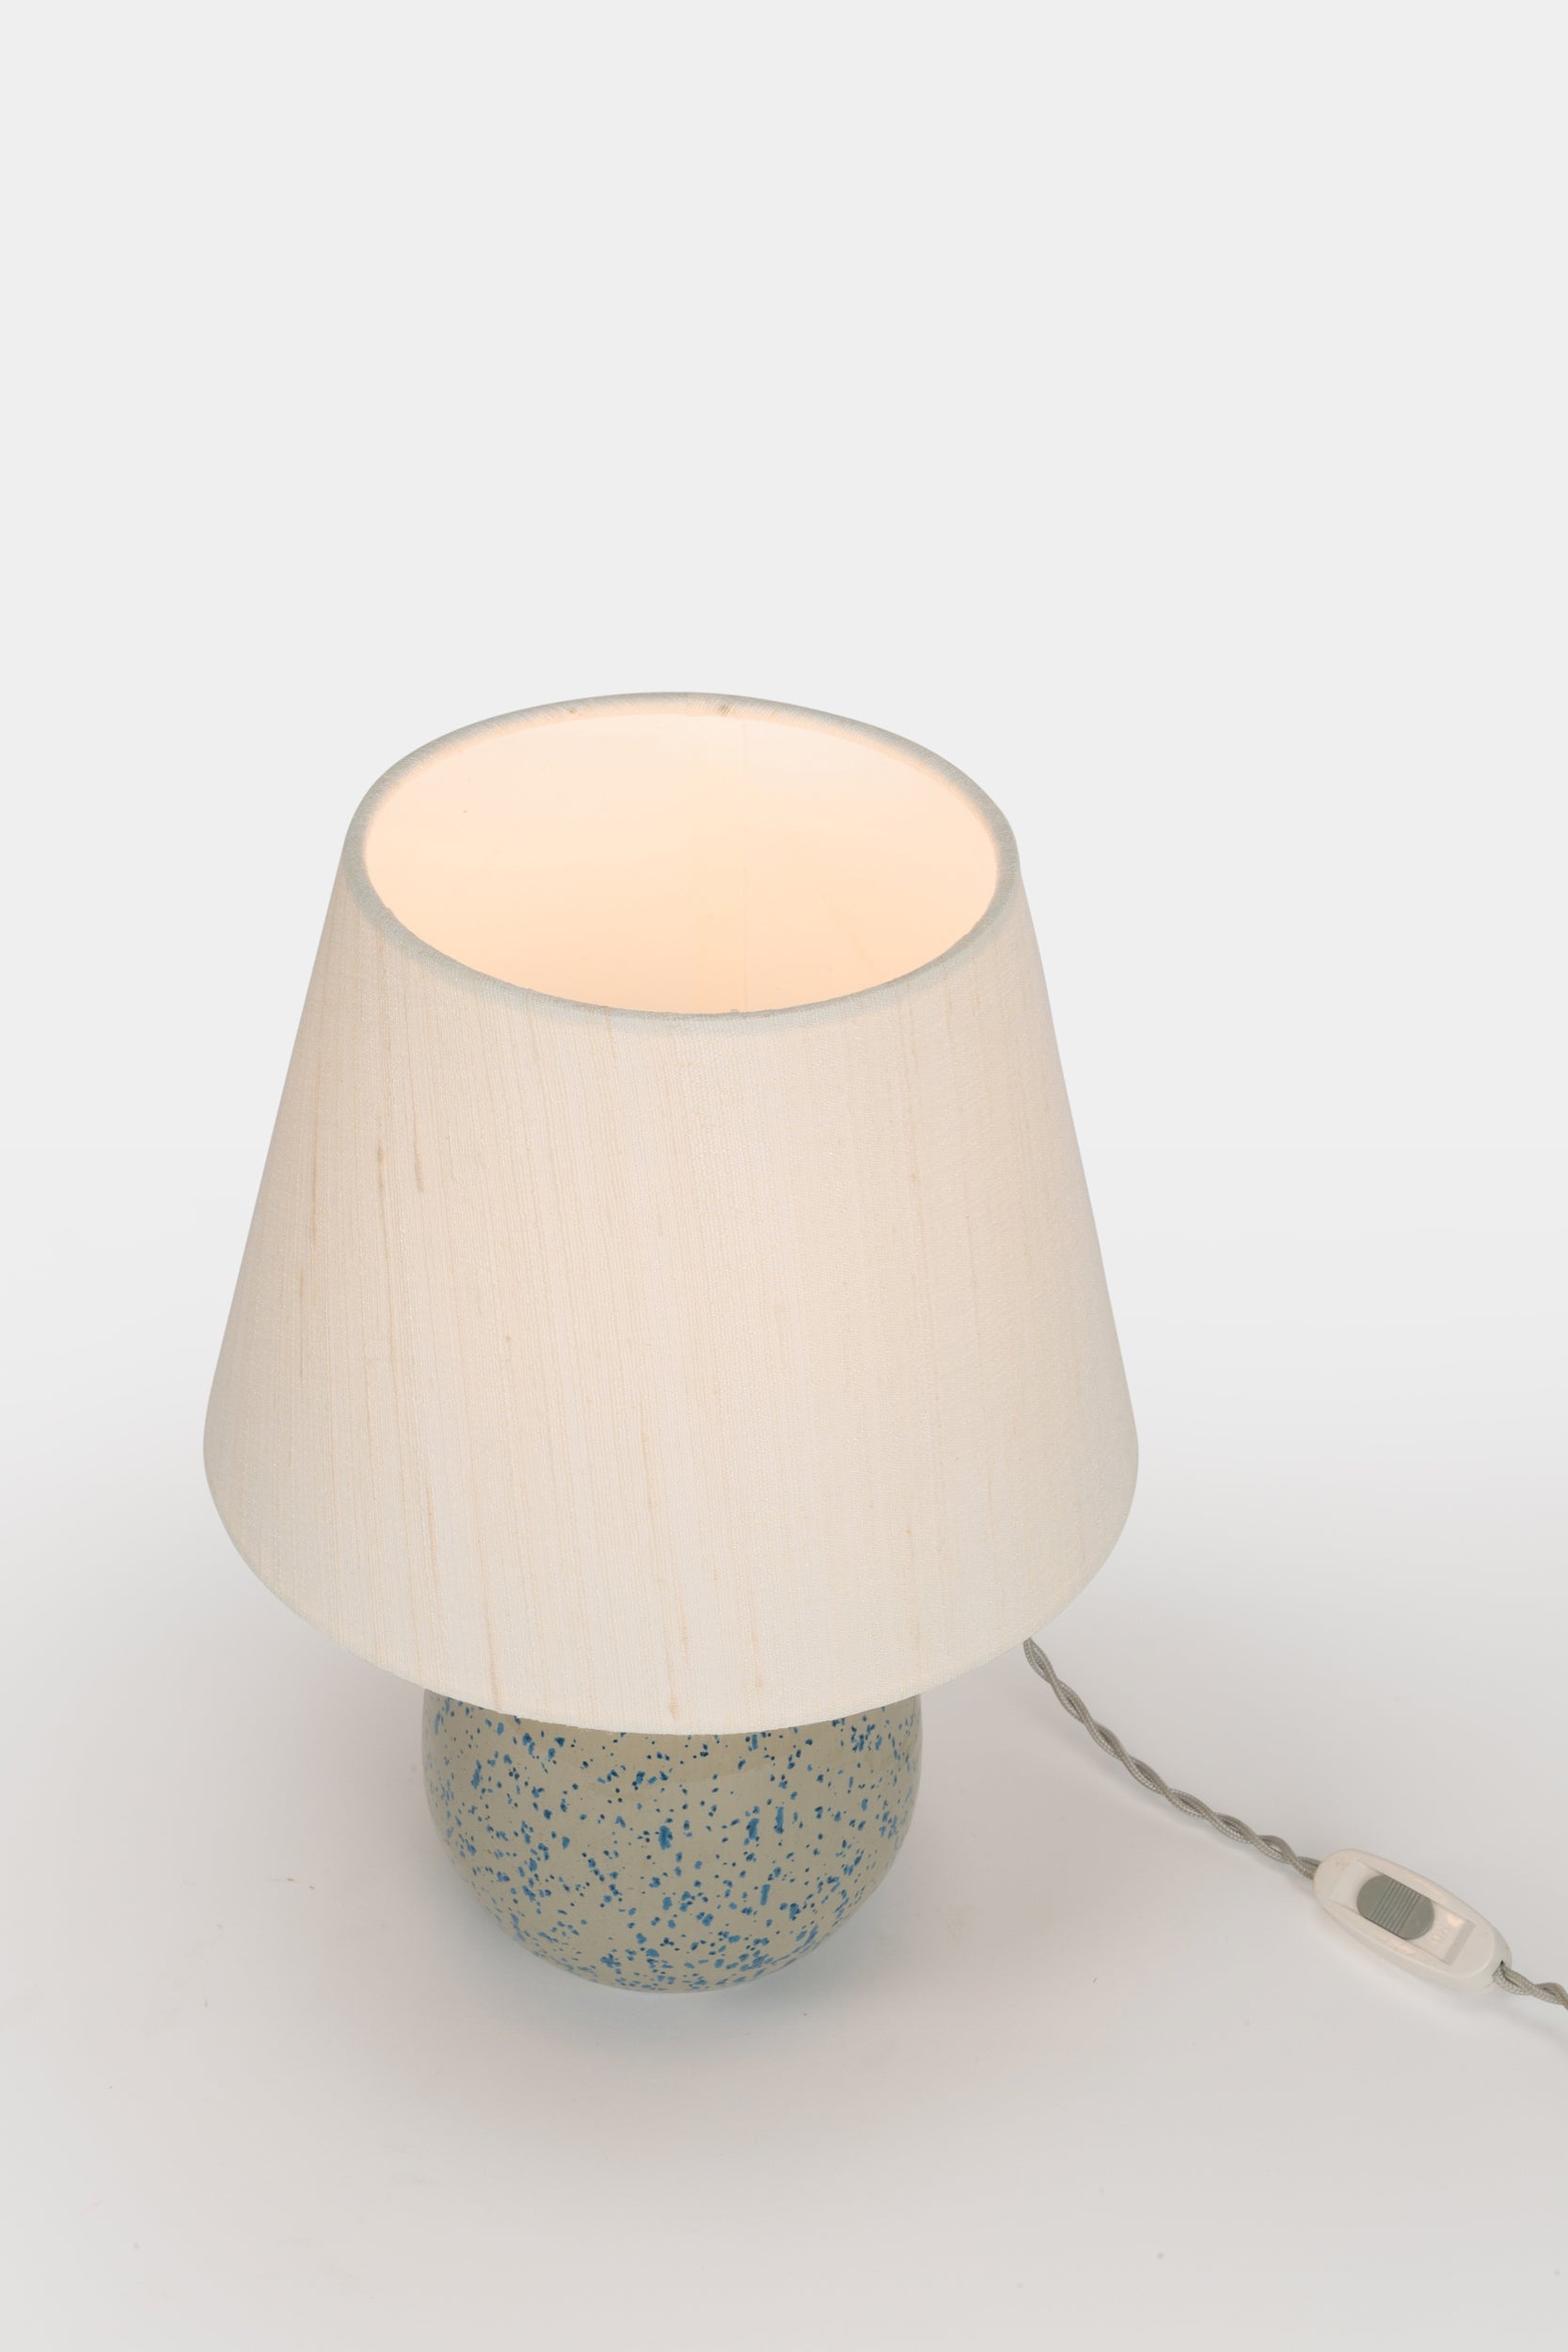 tisch-lampe-leuchte-Arnold-zahner-rheinfeldener-keramik